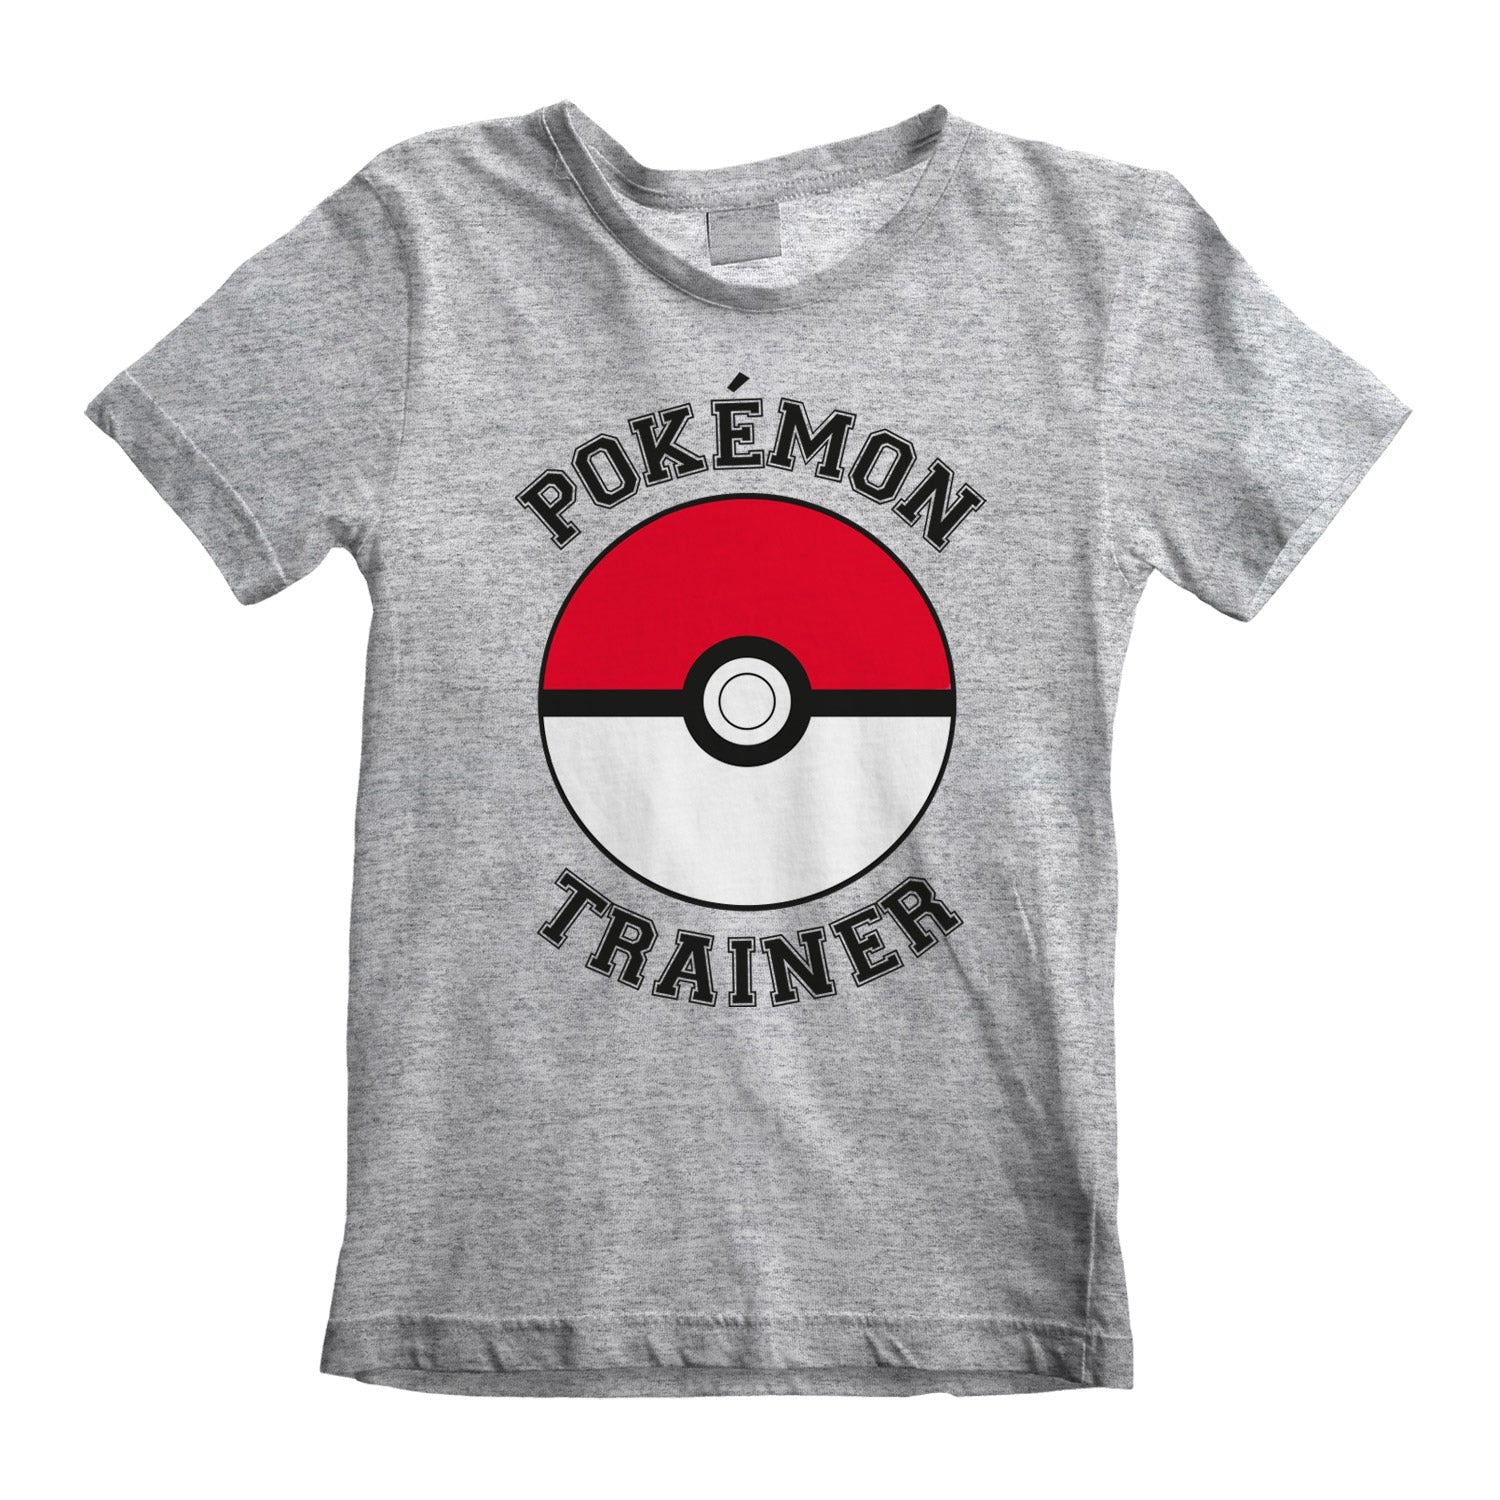 T-shirt Pokemon: Trainer - Taglia M - Se acquistata con Pokemon Leggende Arceus scontata a 10 € al check-out